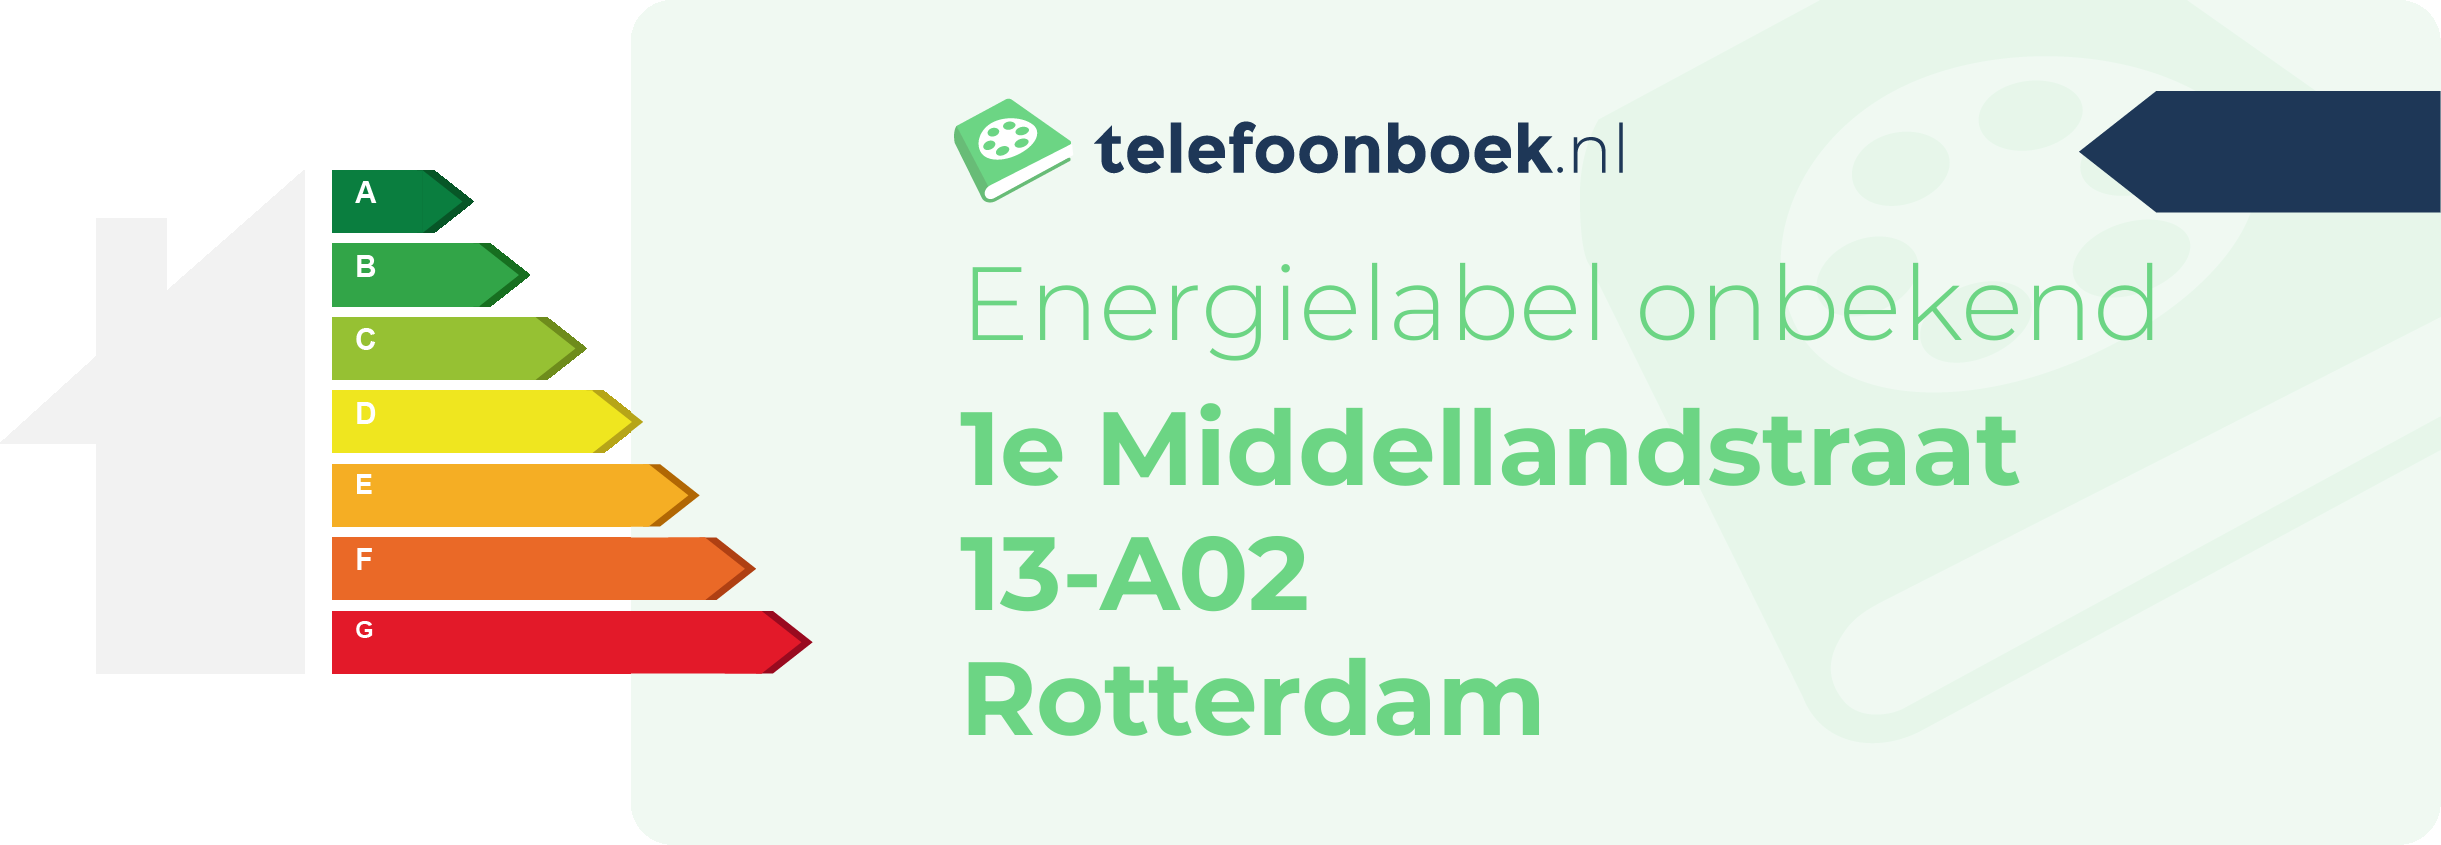 Energielabel 1e Middellandstraat 13-A02 Rotterdam